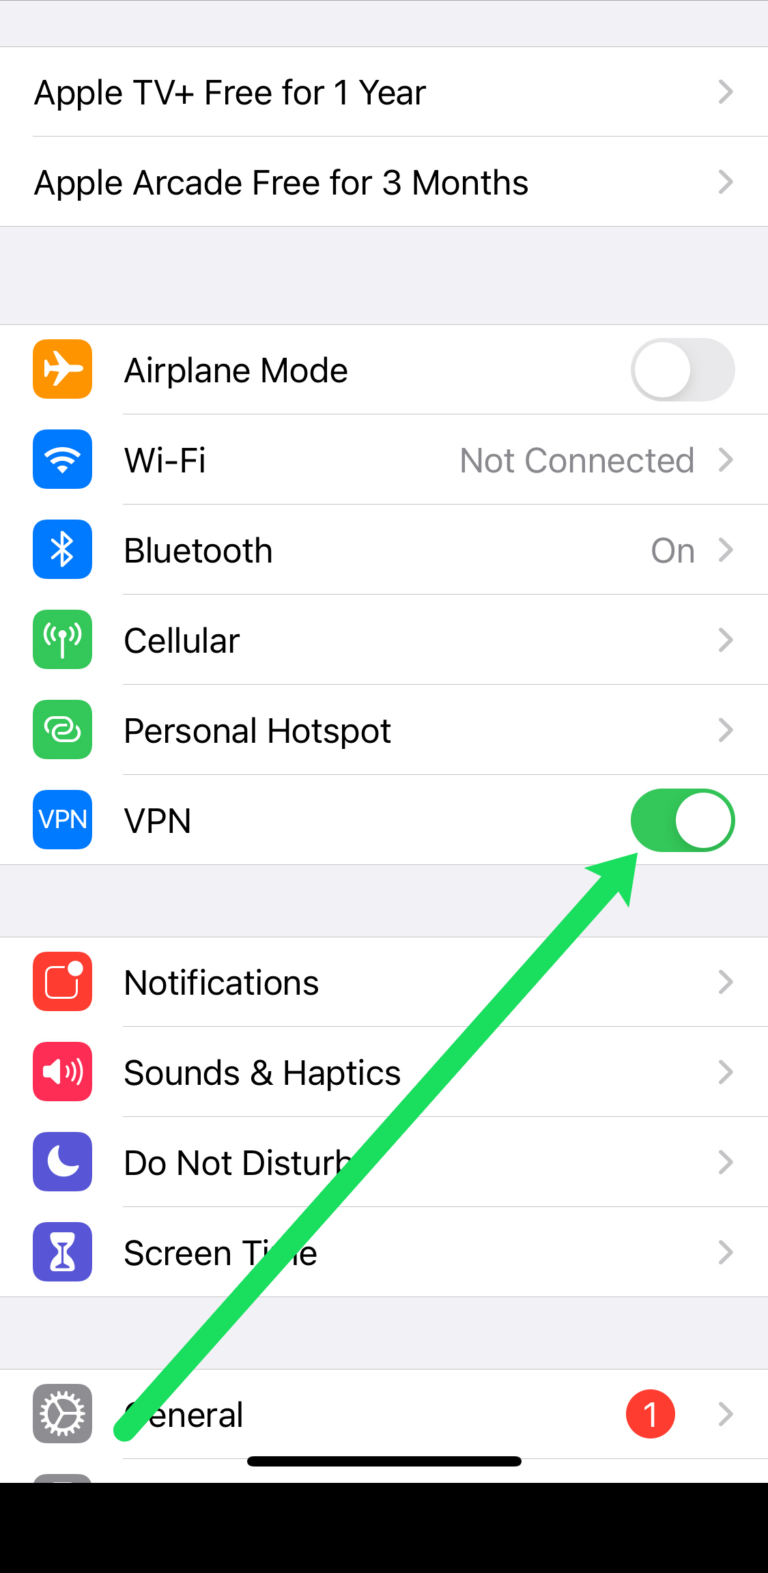 When should I turn off VPN?